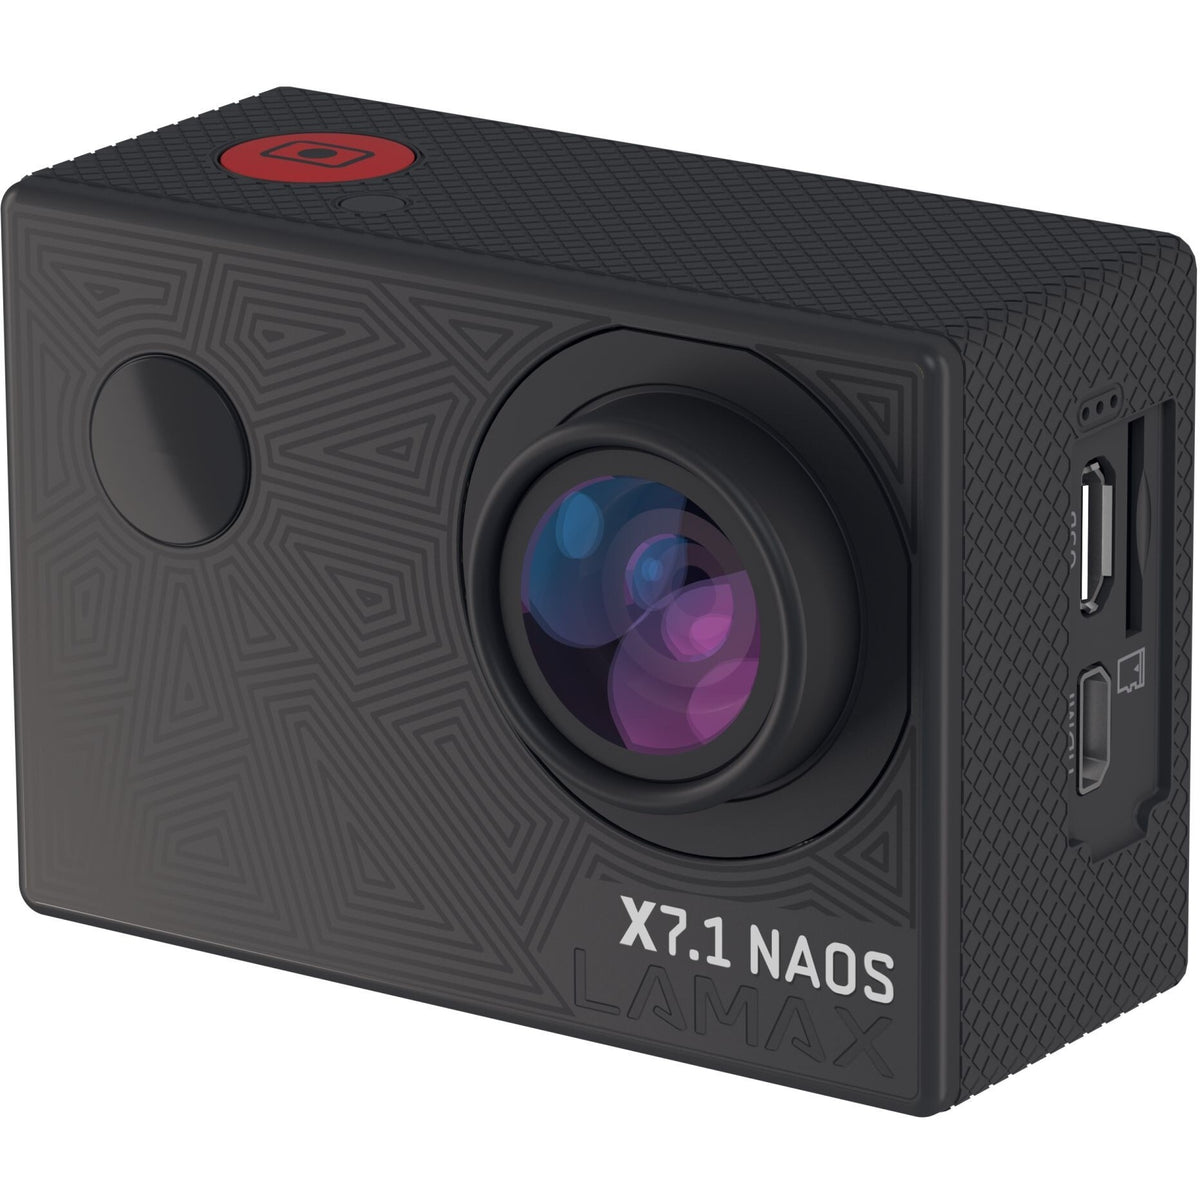 Akčná kamera Lamax X7.1 Naos 2&quot;, 4K, WiFi, 170° + prísl.